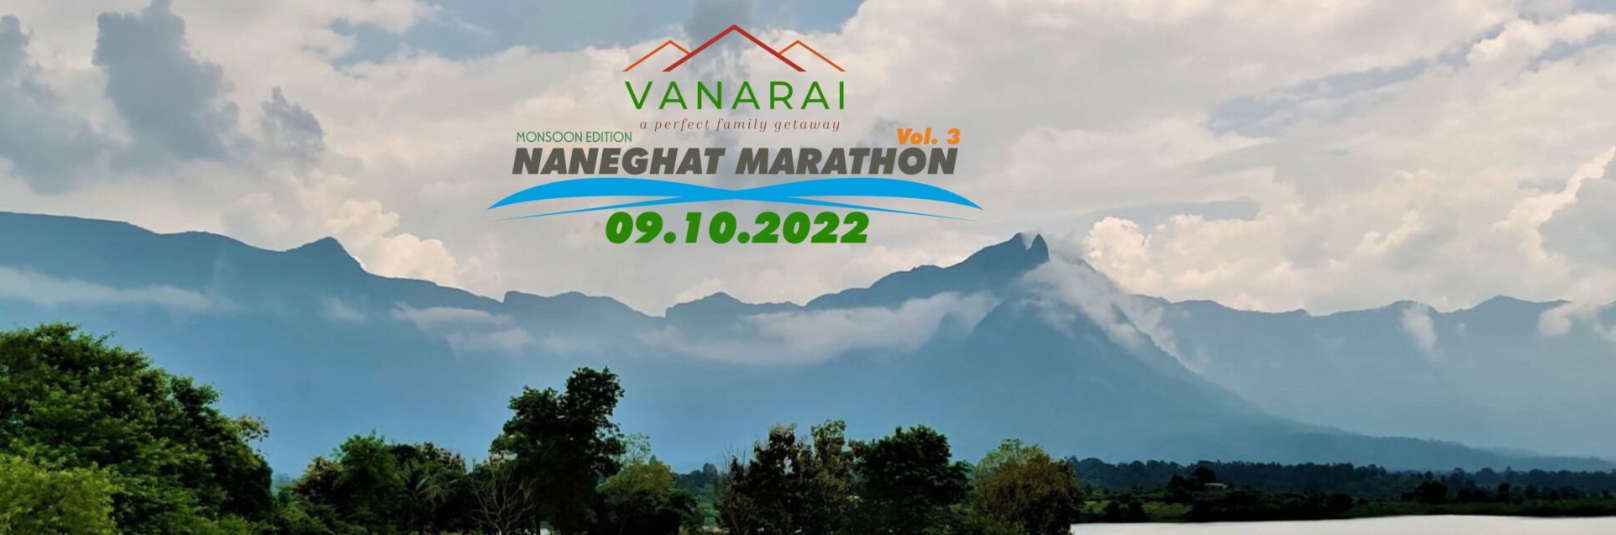 Naneghat Marathon 2022